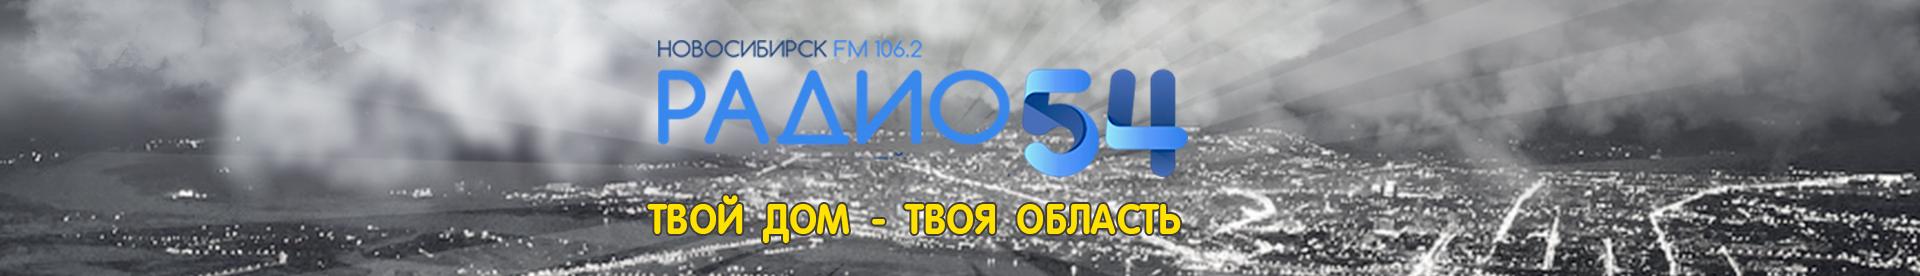 Слушать радио 54 106.2. Радио 54 Новосибирск. Радио 54 Новосибирск логотипы. Радио 54 Новосибирск волна.